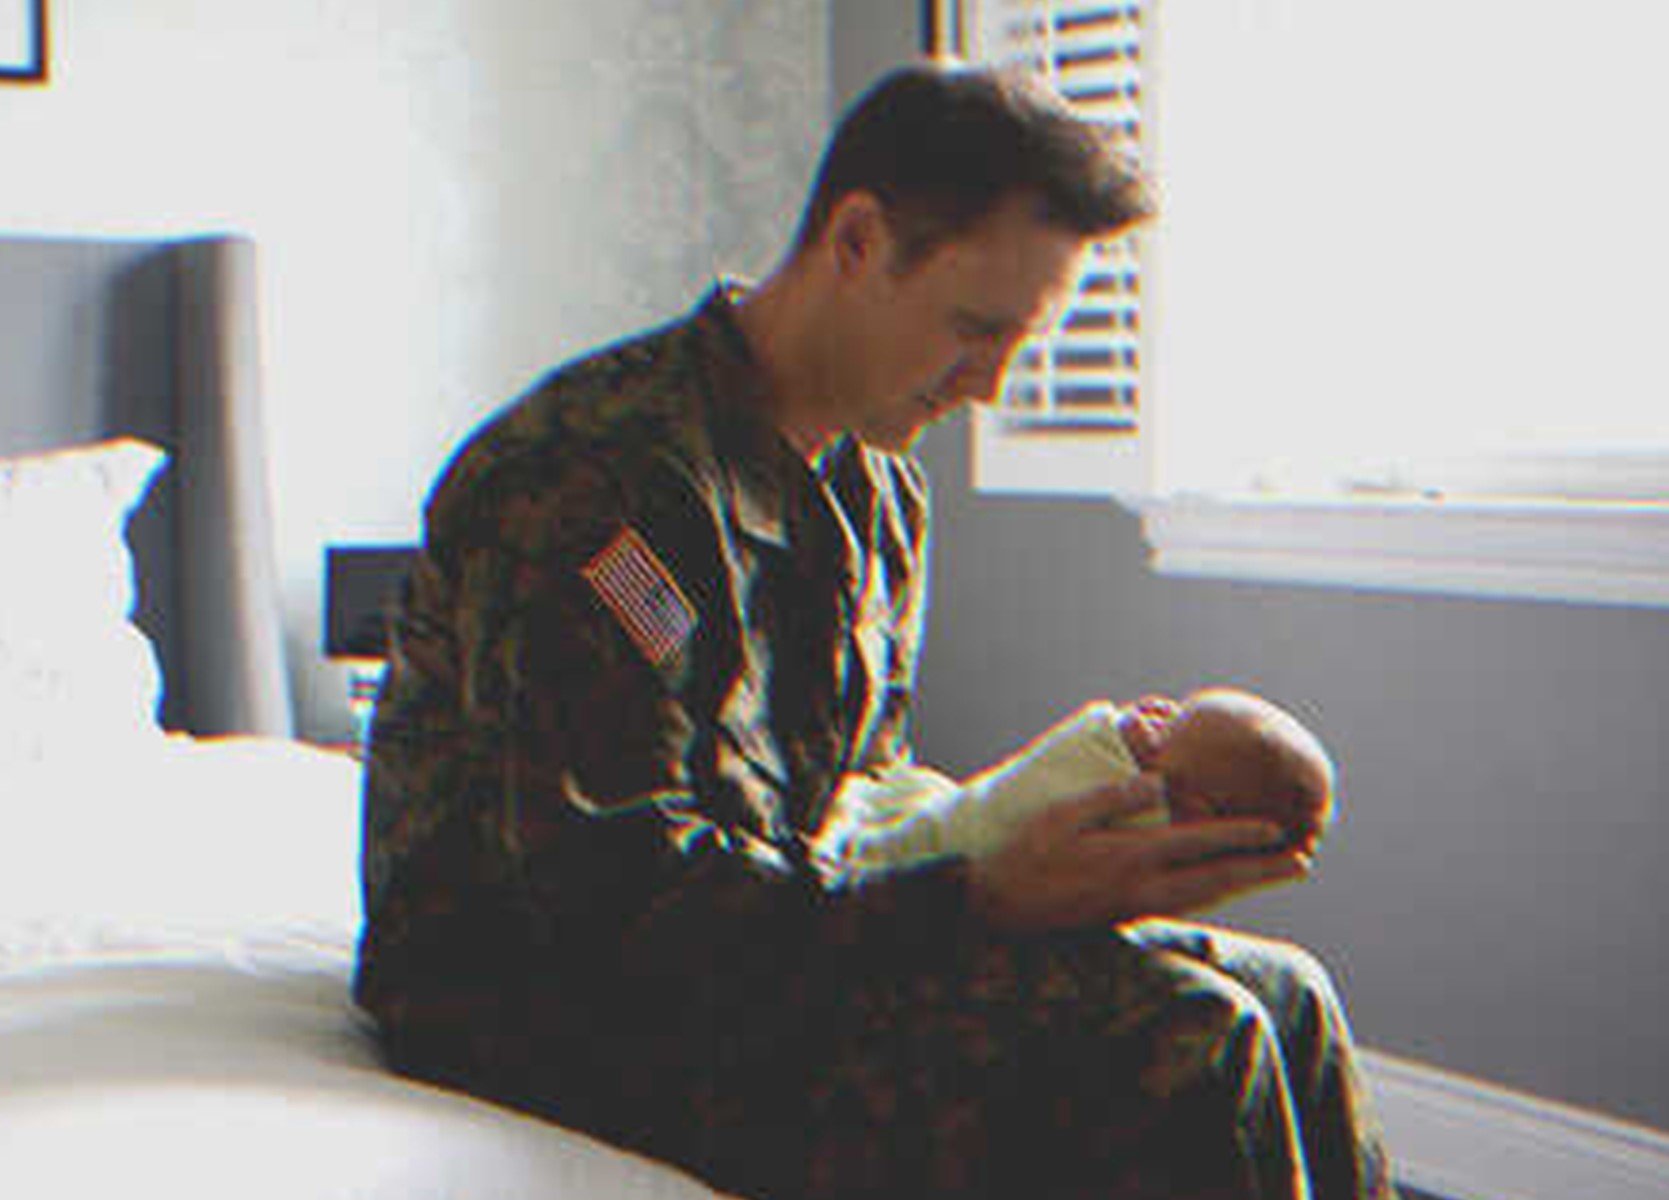 Adam hielt das winzige Baby in seinen Händen. | Quelle: Shutterstock.com